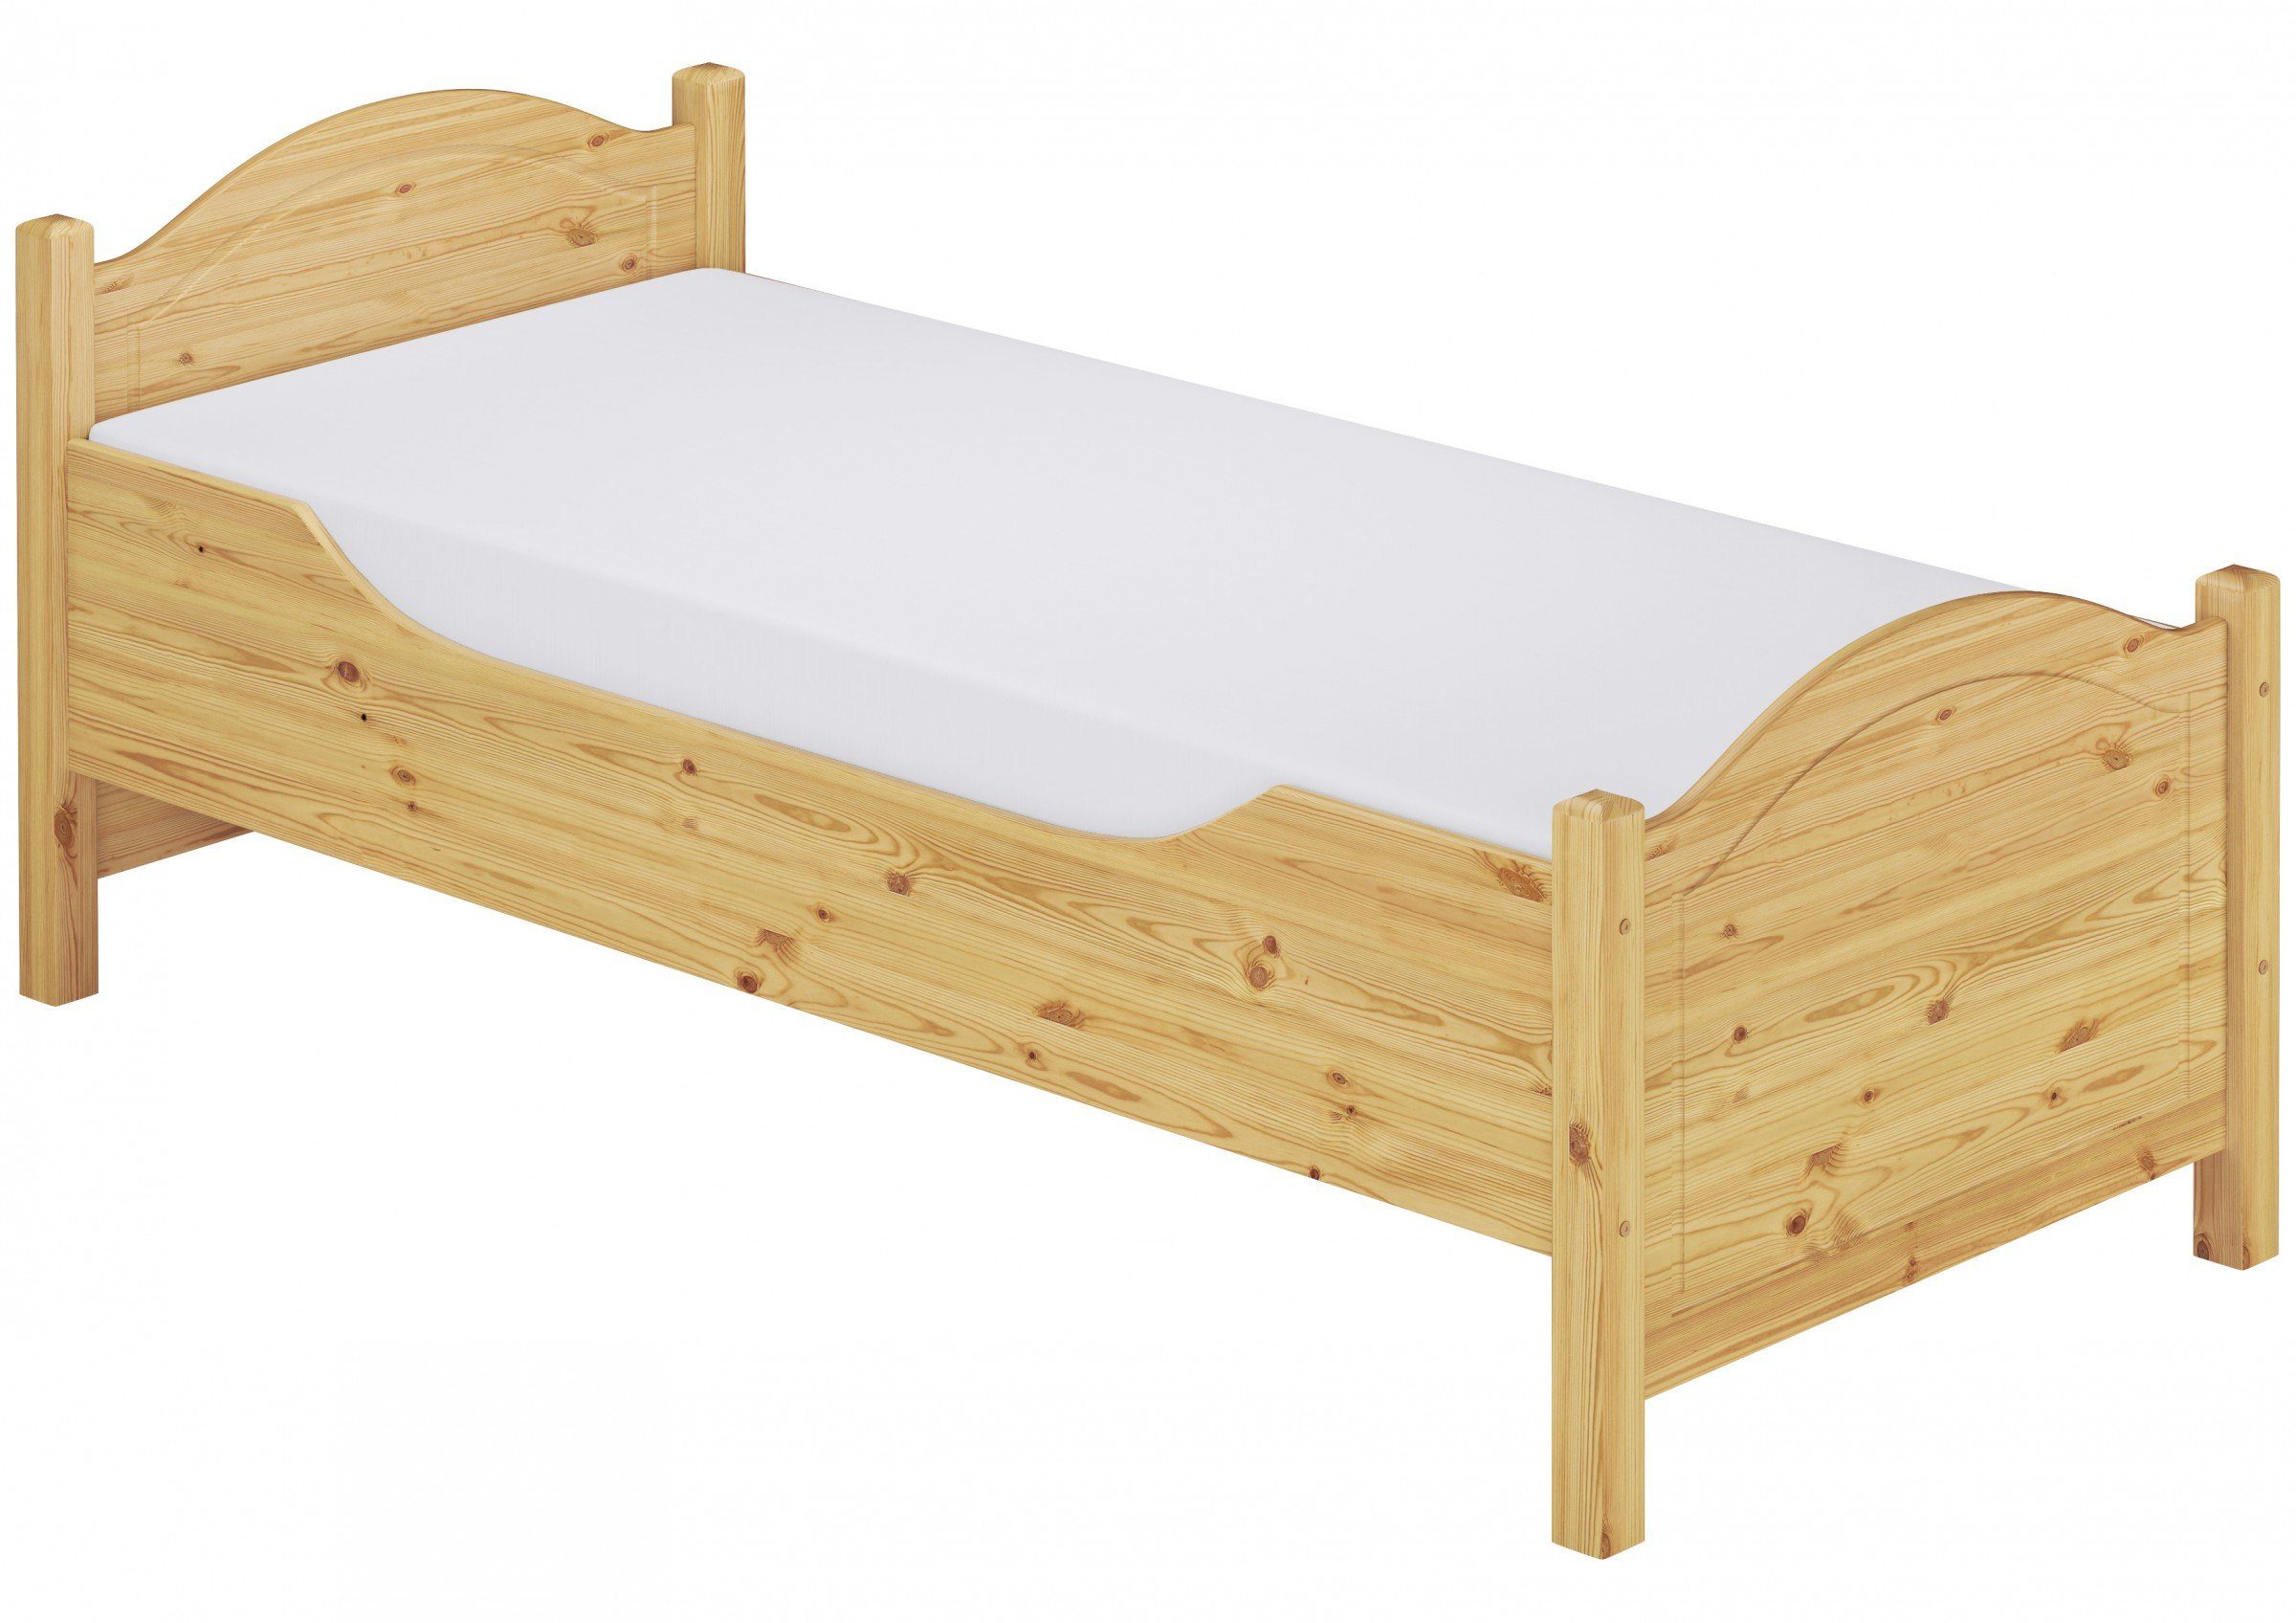 ERST-HOLZ Bett Seniorenbett hoch Kiefer 90x200 mit Rost und Matratze, Kieferfarblos lackiert